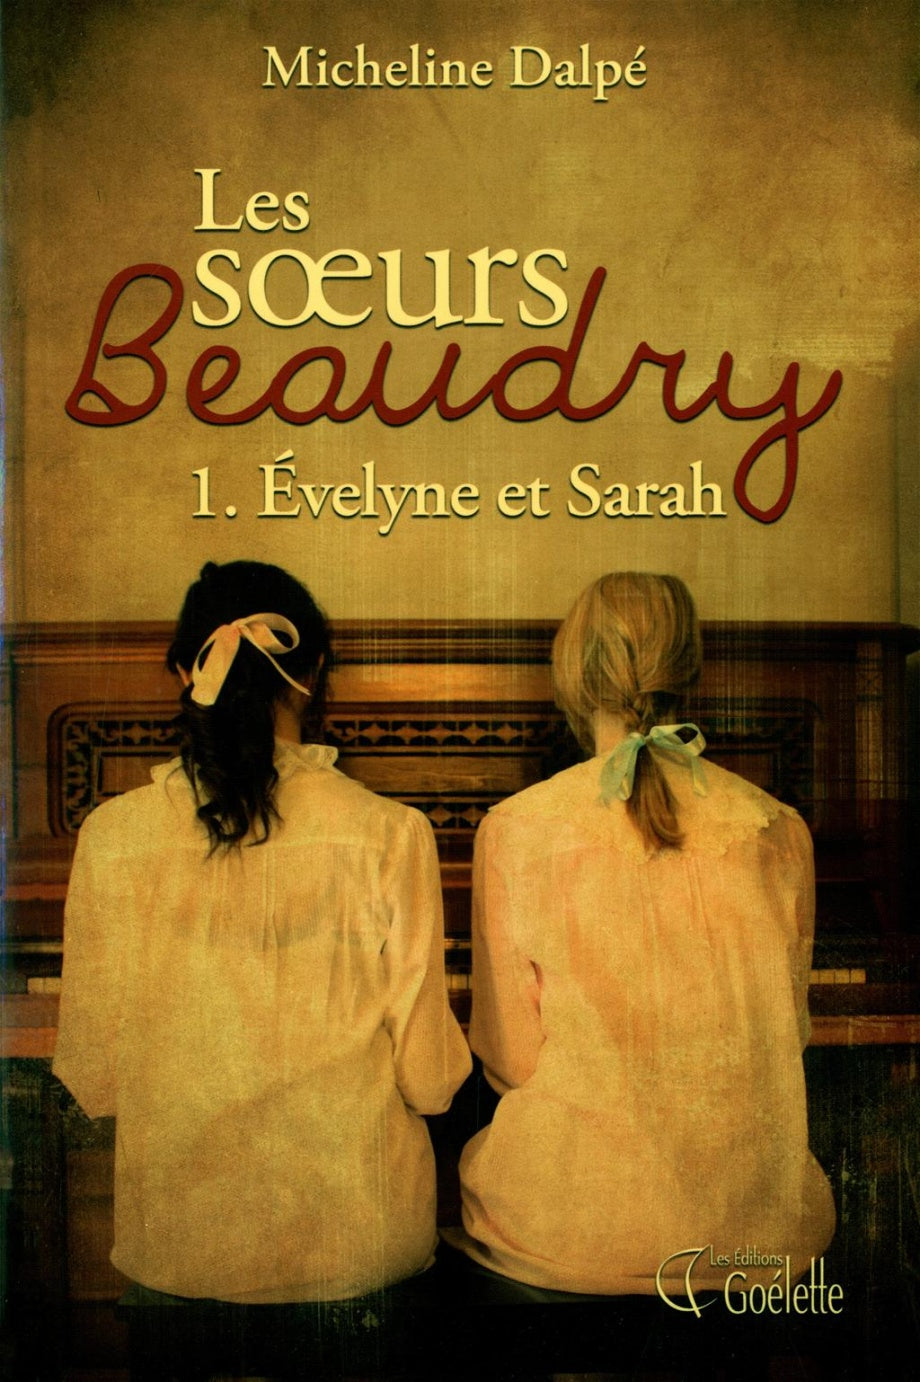 Les soeurs Beaudry # 1 : Évelyne et Sarah - Micheline Dalpé